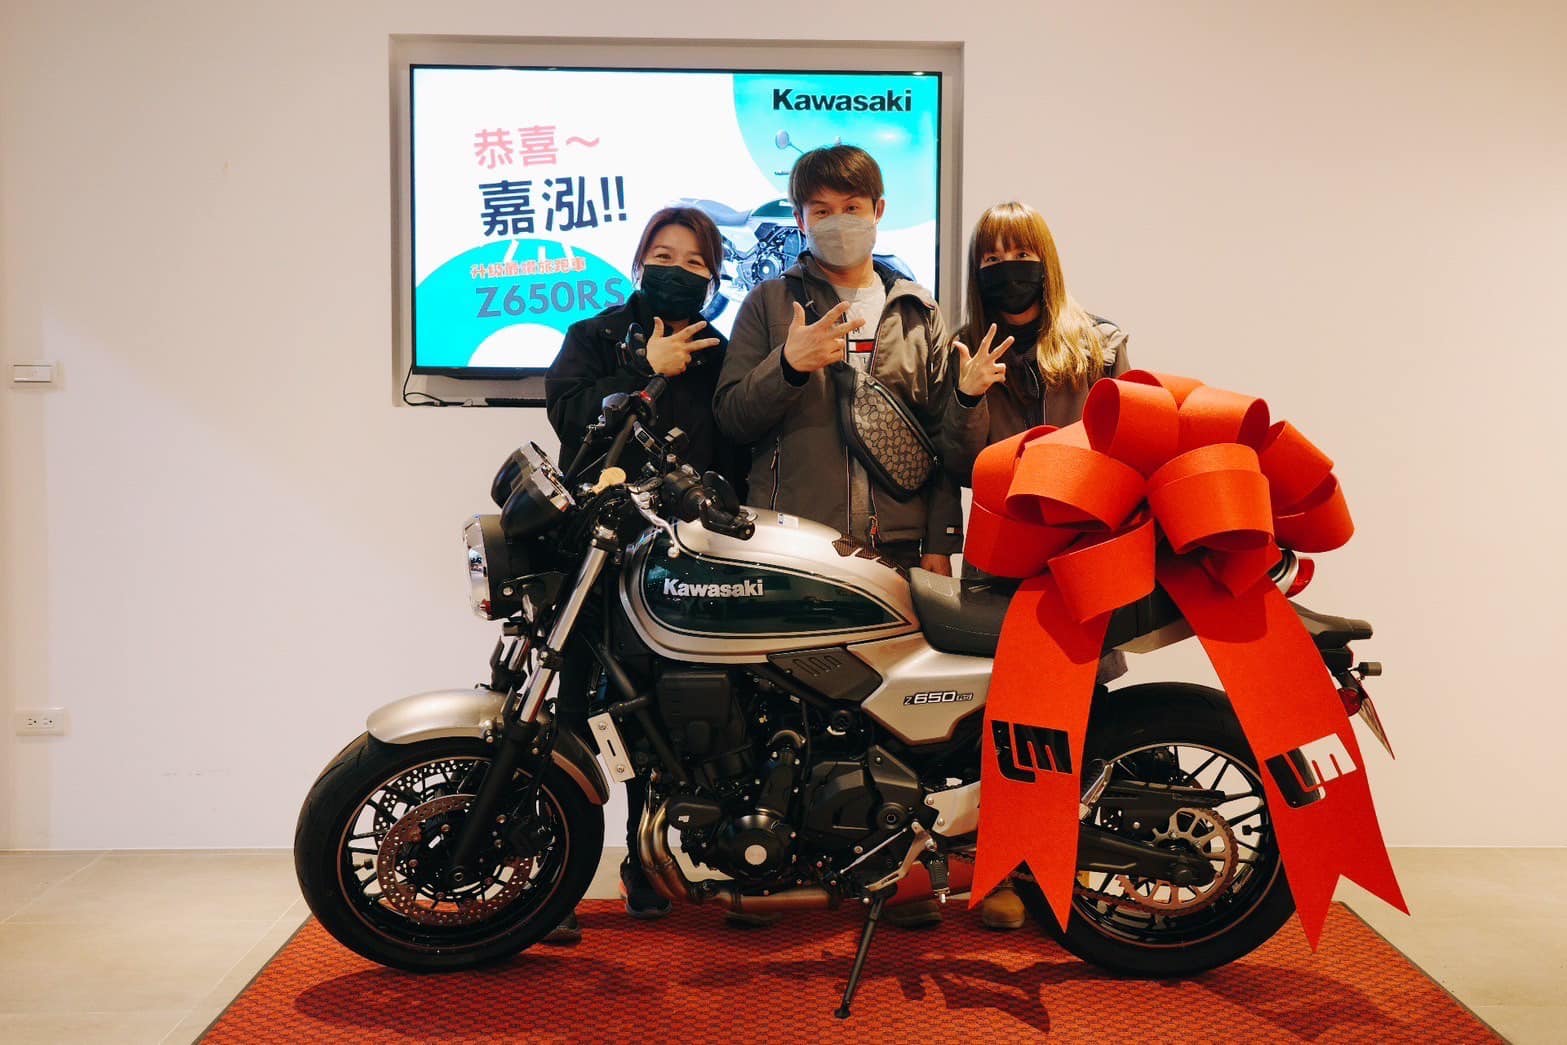 【敏傑車業資深銷售專員 康妮 Connie】Kawasaki Z650RS - 「Webike-摩托車市」 《 康妮賀成交 》恭喜2位車主成功圓夢 人生首台紅牌 Kawasaki Z650RS 來桃園找康妮購車 一同出遊